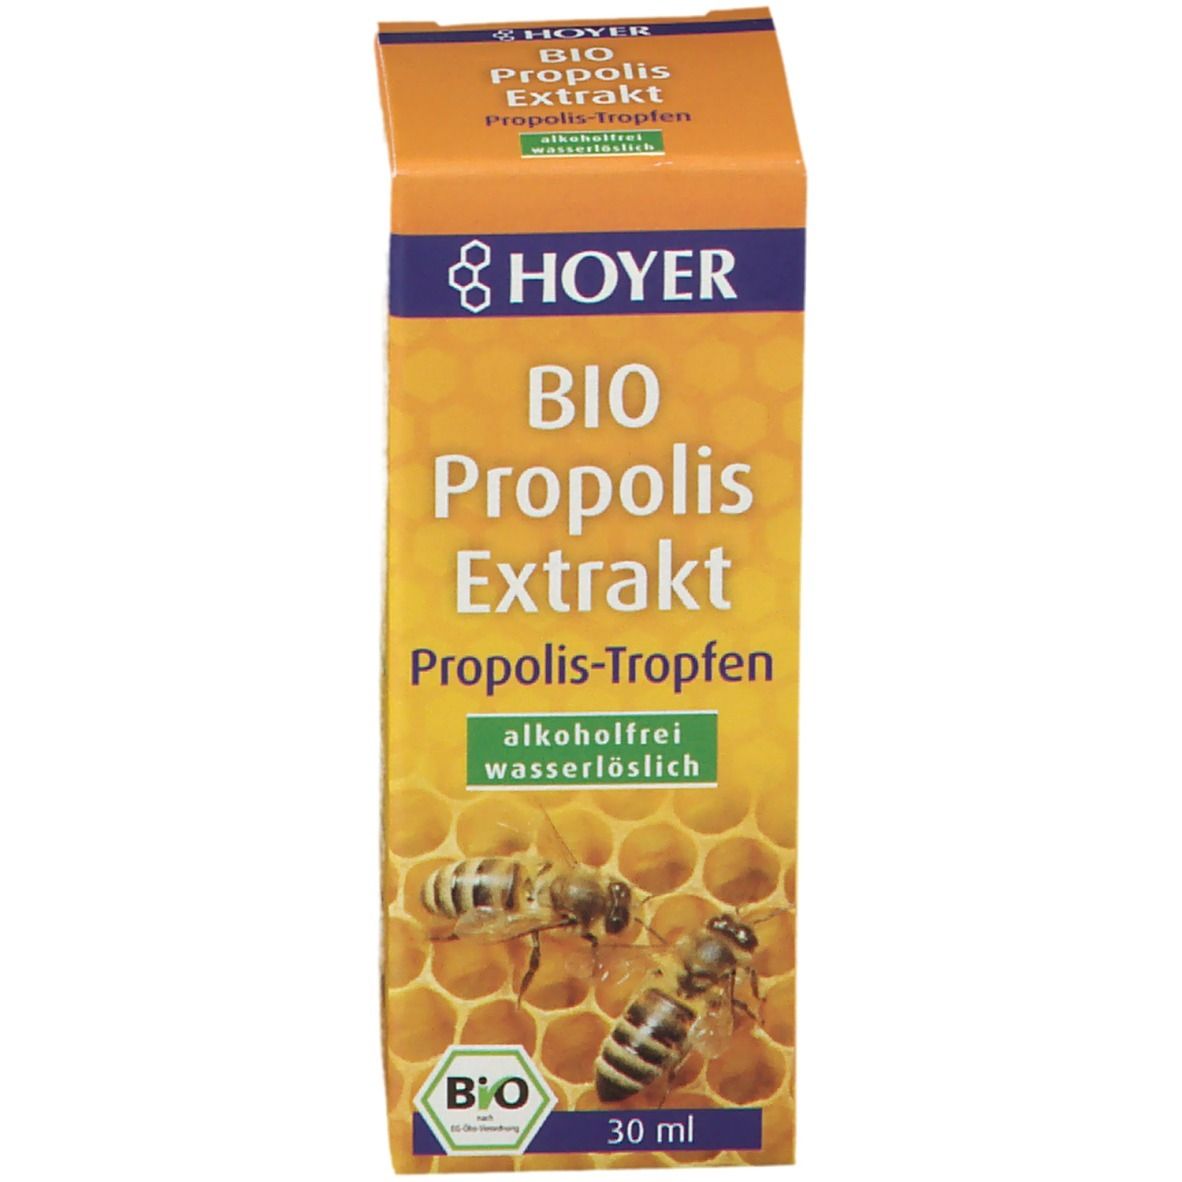 HOYER Propolis Extrakt Bio alkoholfrei wasserlöslich